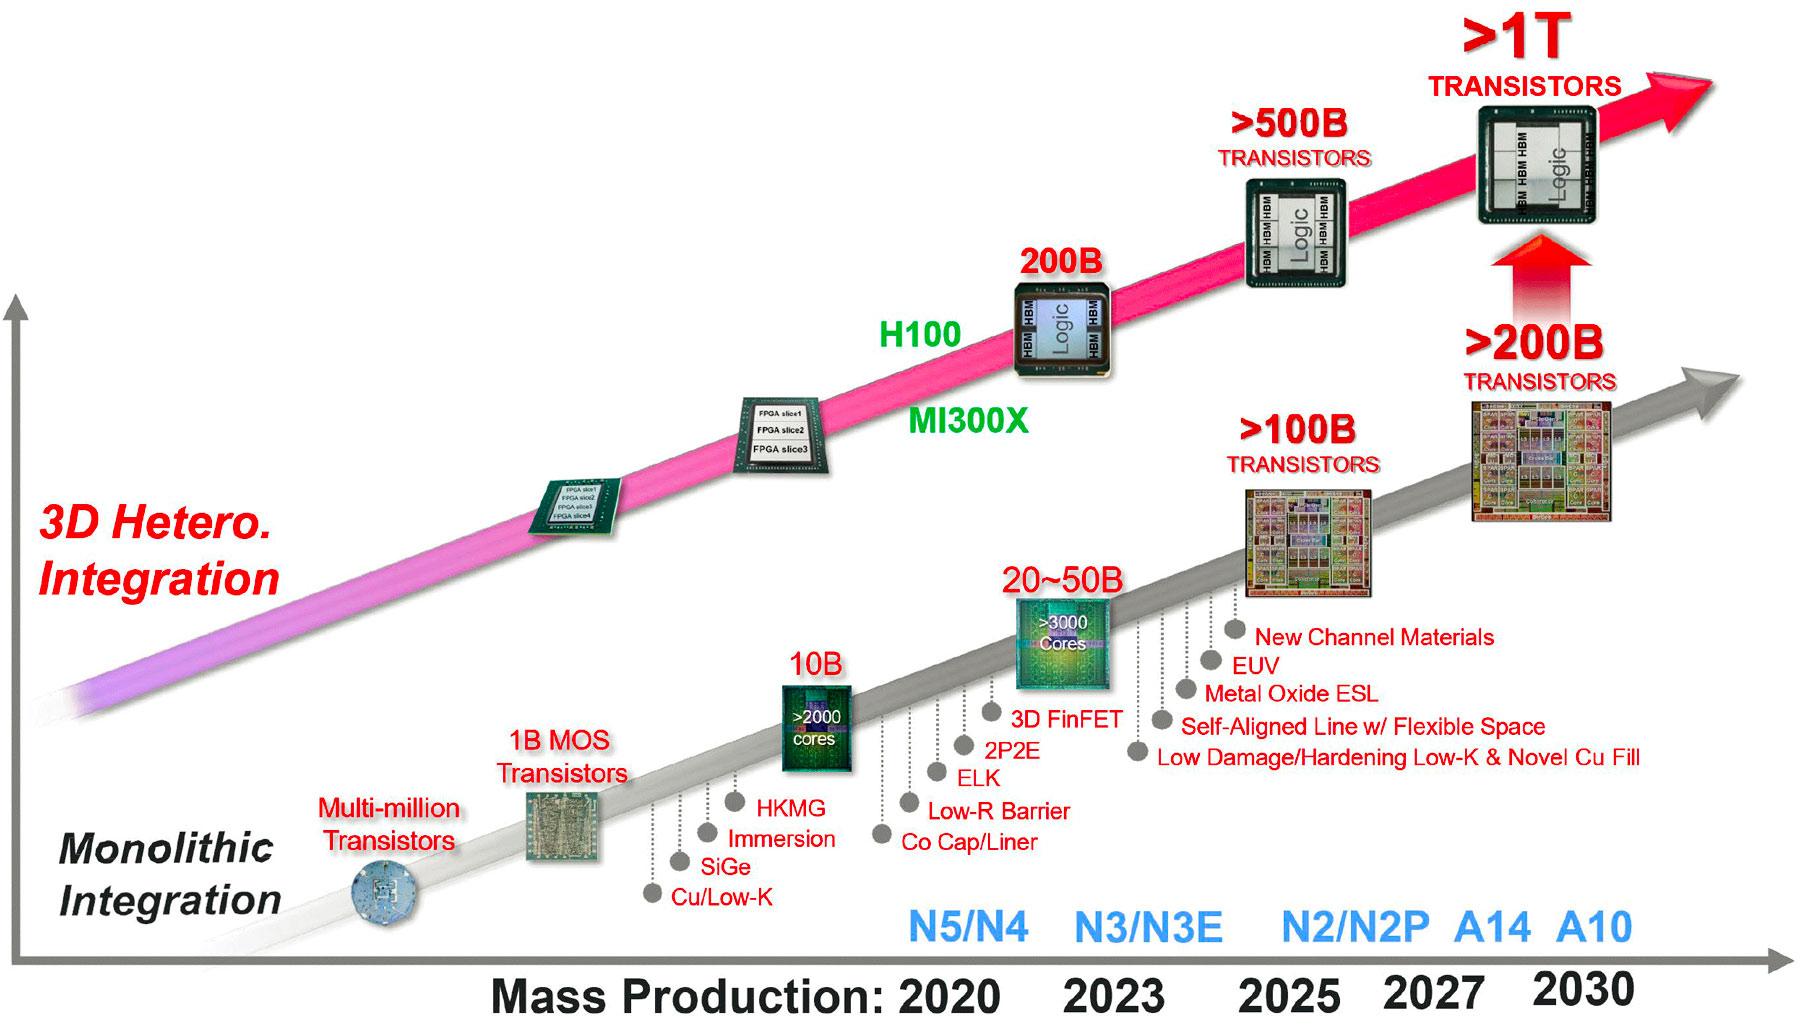 TSMC roadmap packaging 2020-2030